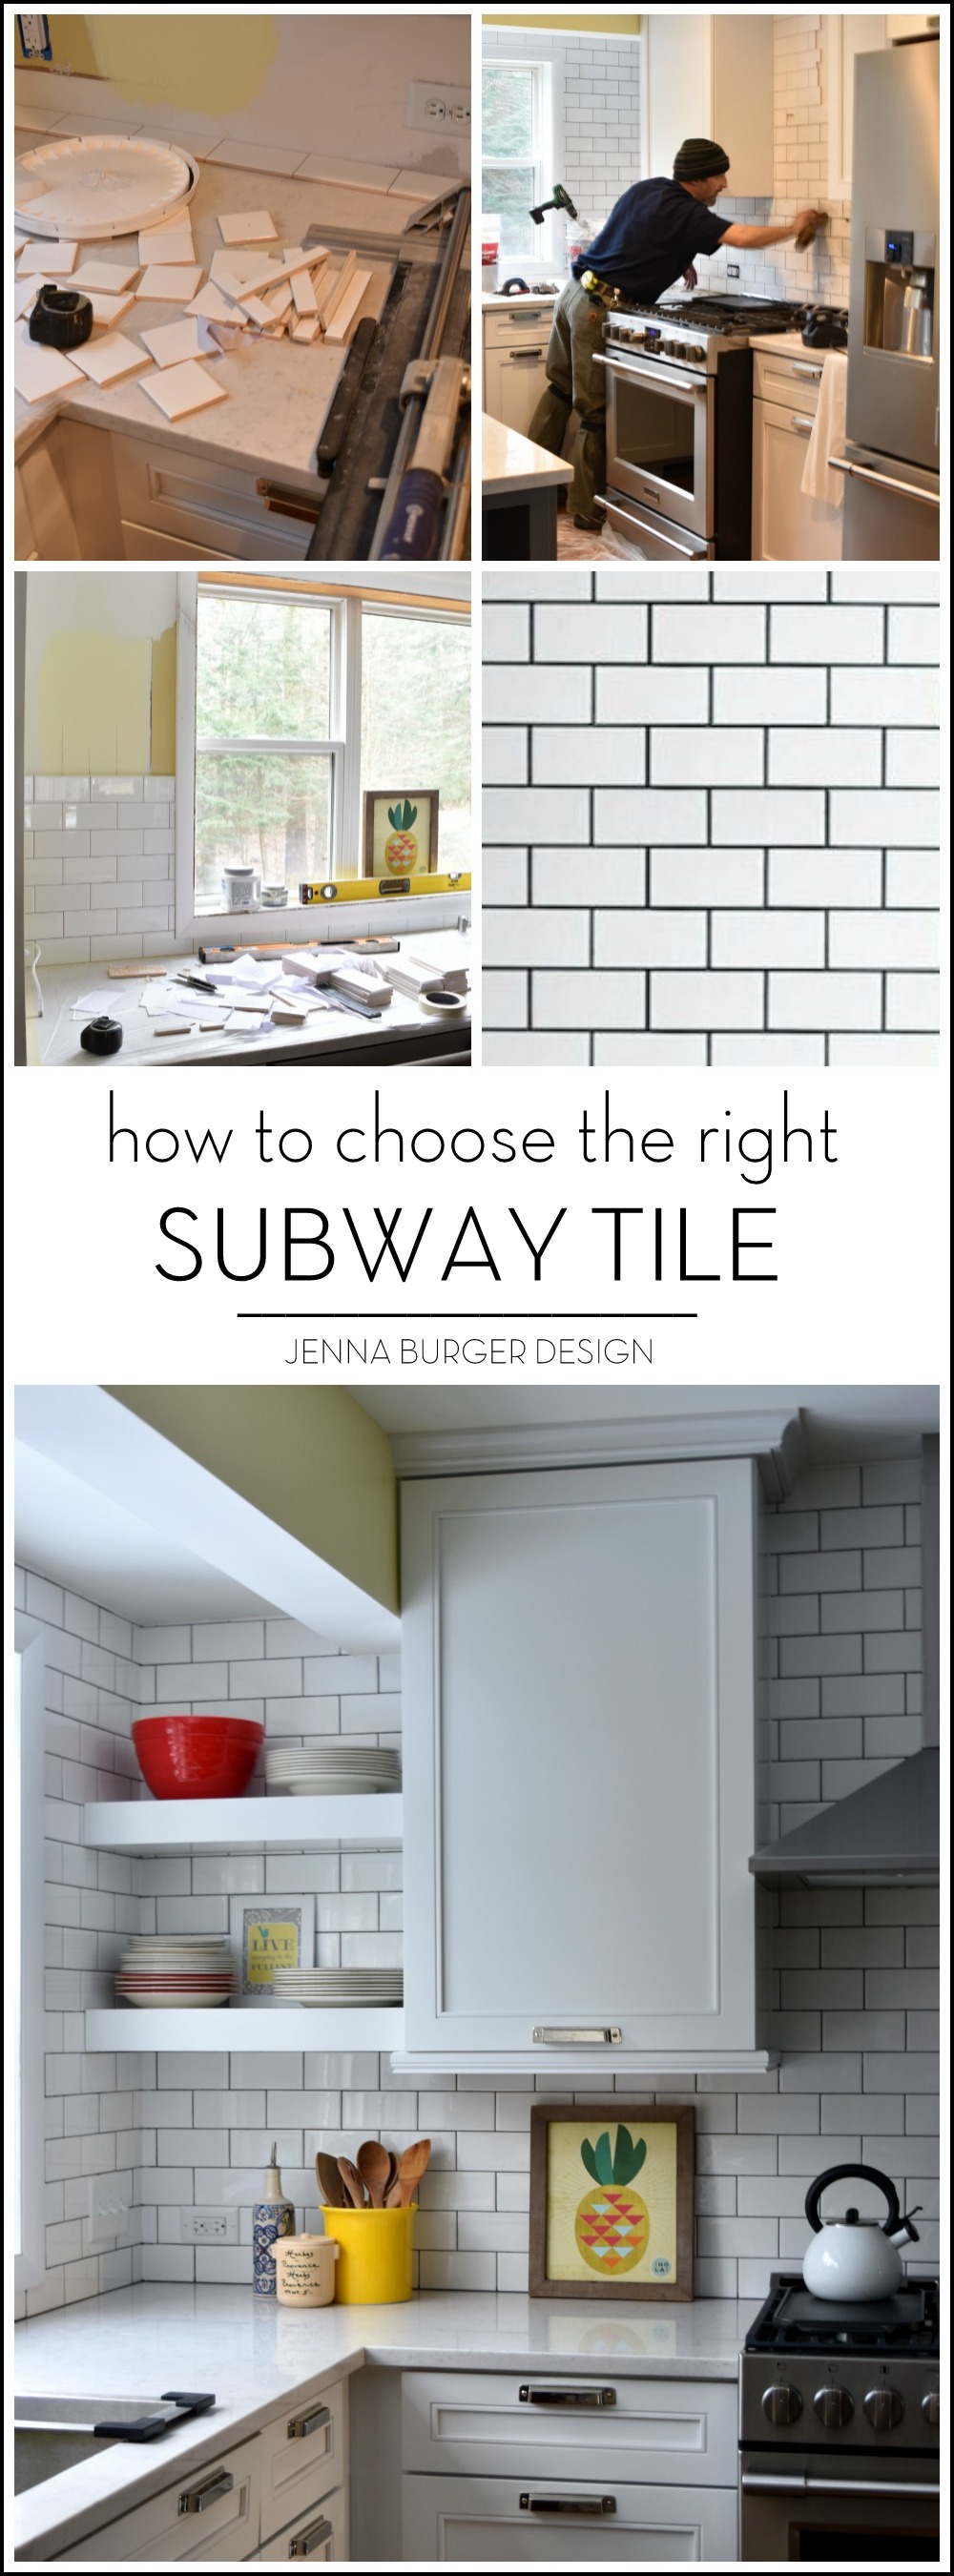 Subway Tile Kitchen Backsplash, Size Of Subway Tile